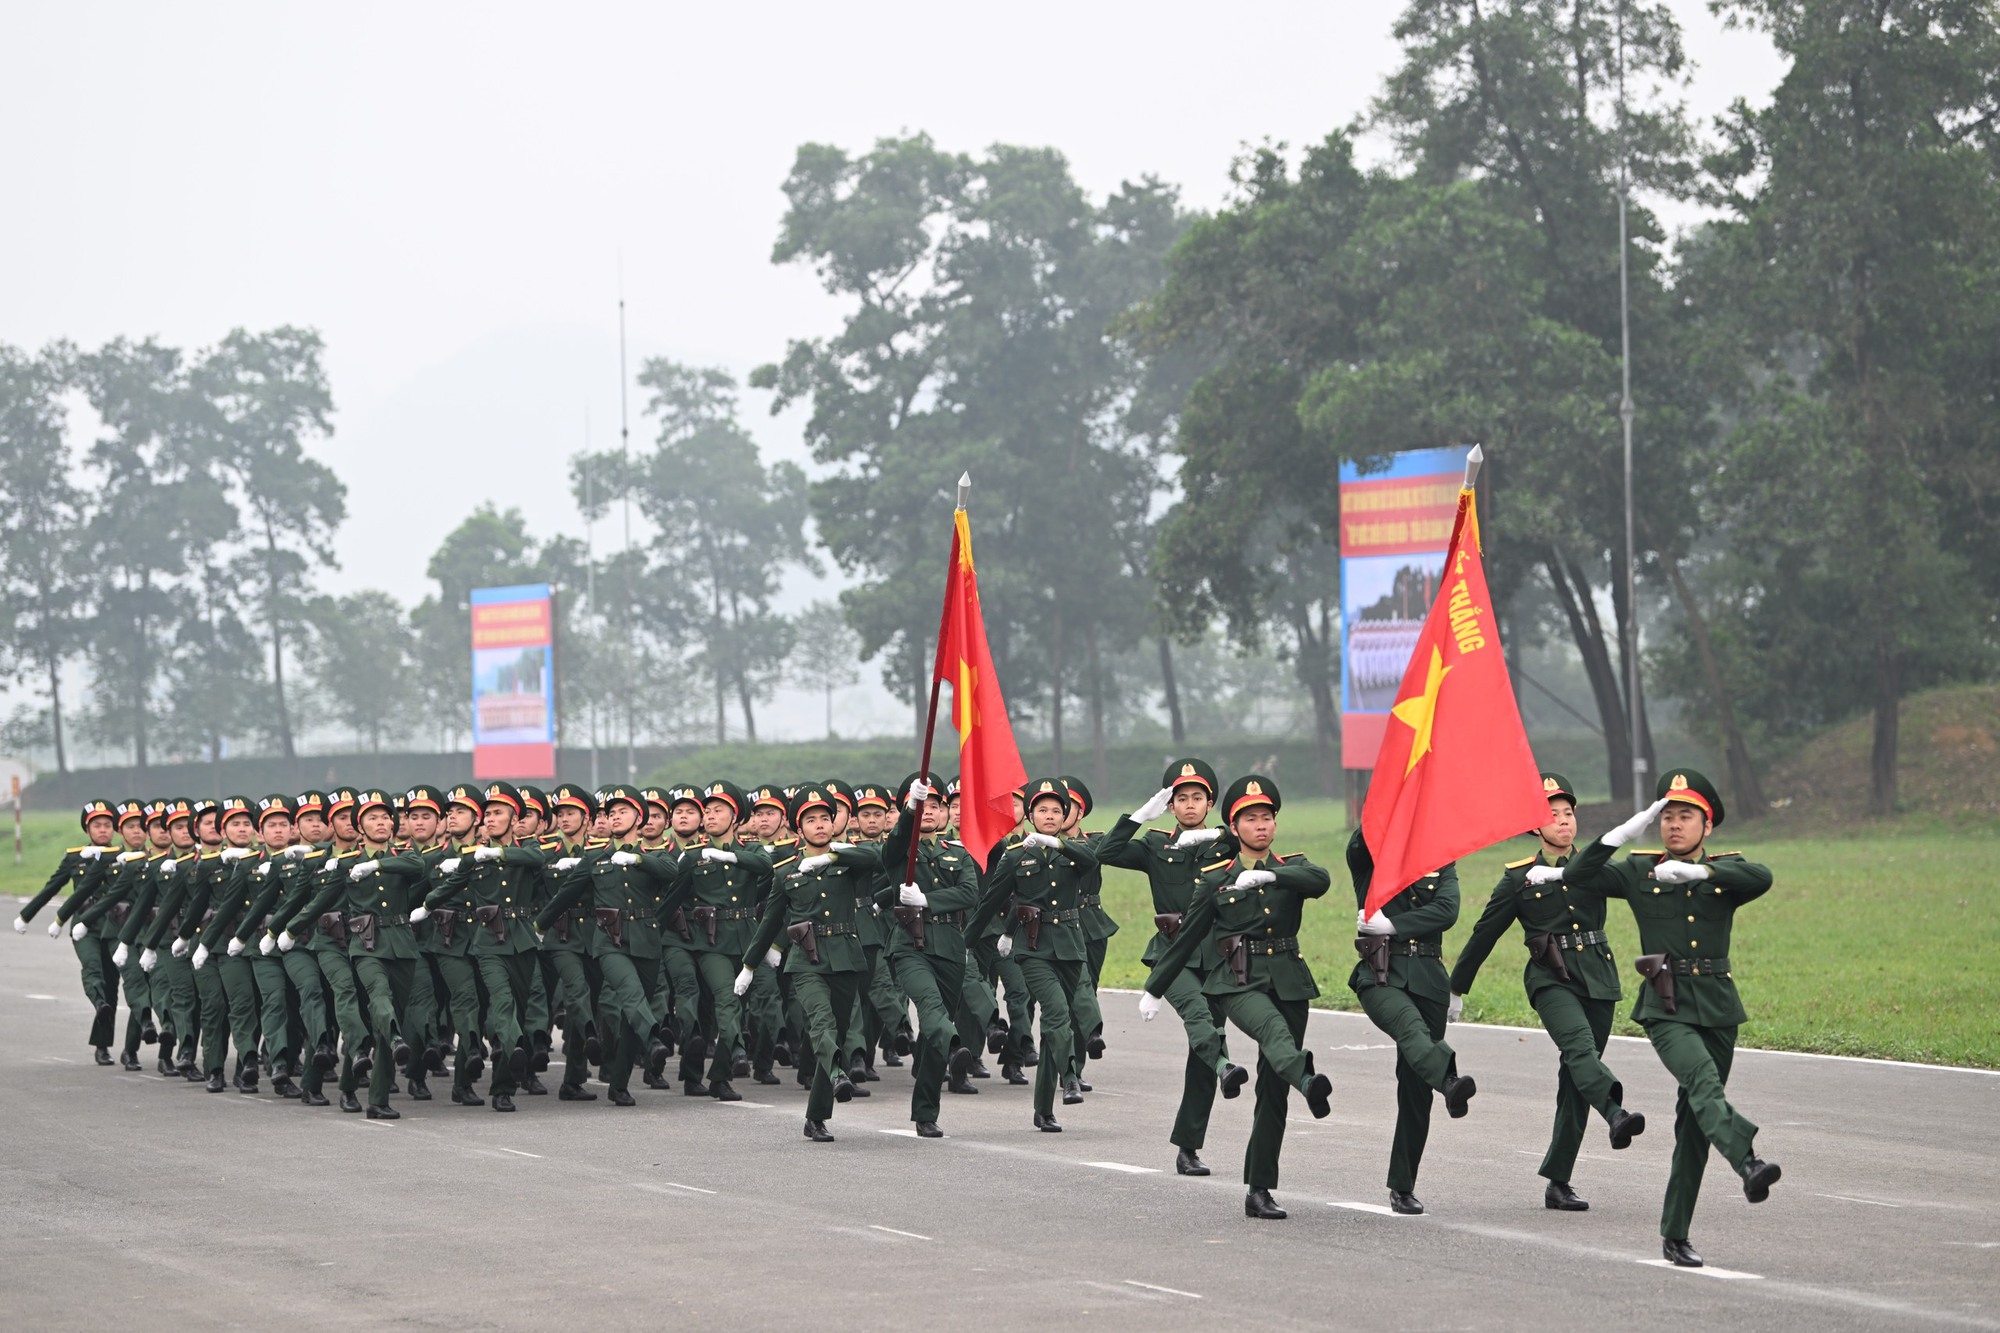 Diễu binh, diễu hành biểu dương lực lượng, khẳng định tầm vóc, giá trị lịch sử vĩ đại của Chiến thắng Điện Biên Phủ- Ảnh 9.